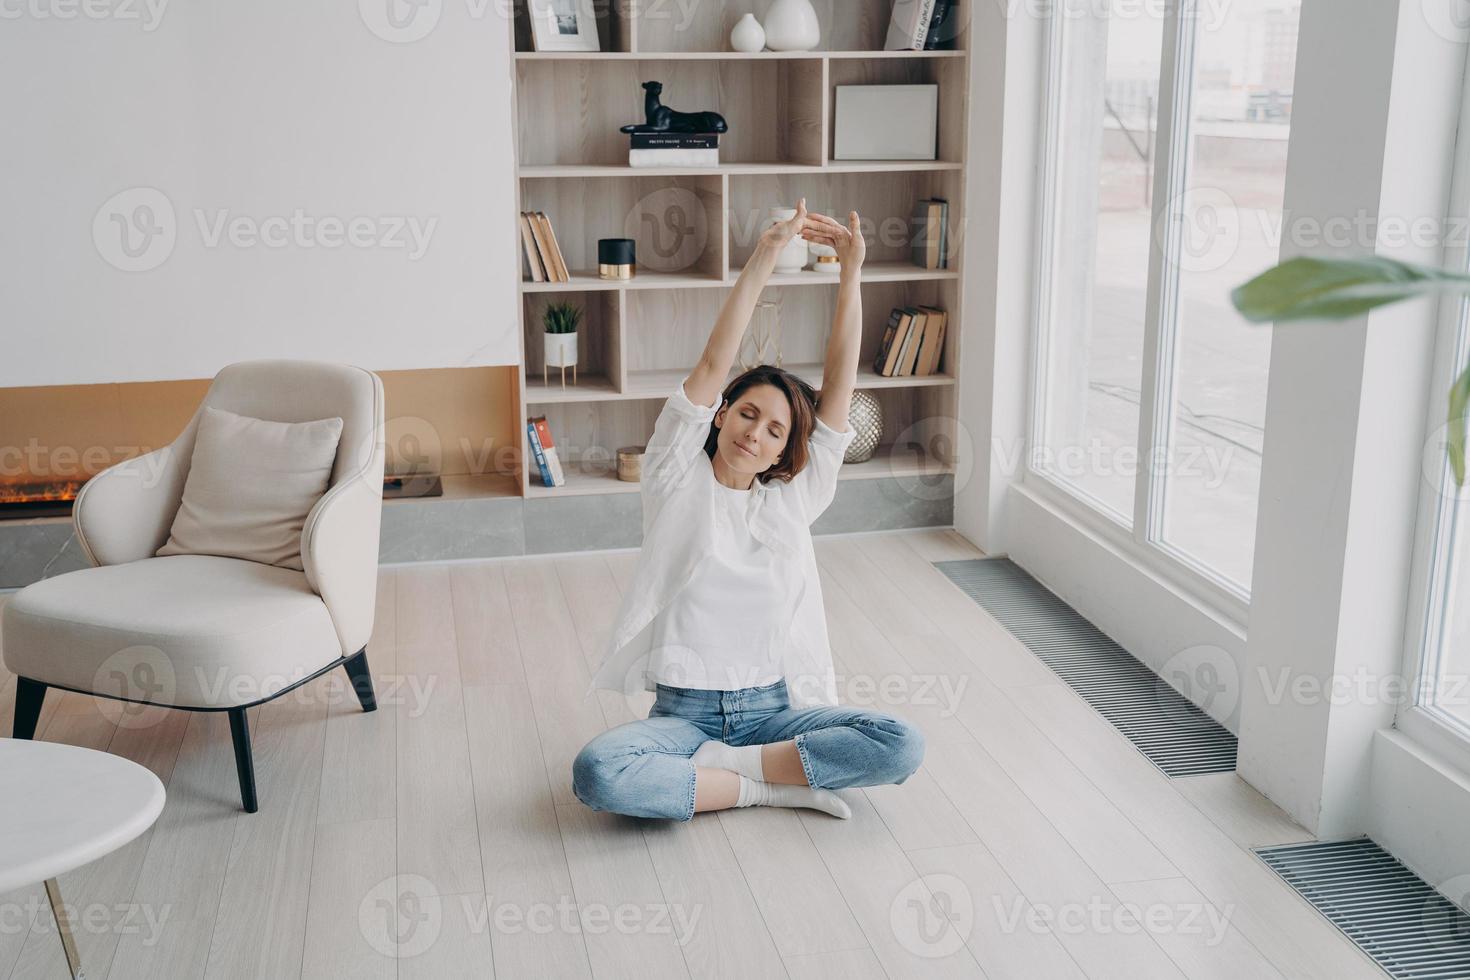 mujer practicando yoga en el piso de la sala de estar, estirando los brazos hacia arriba. estilo de vida saludable, bienestar foto